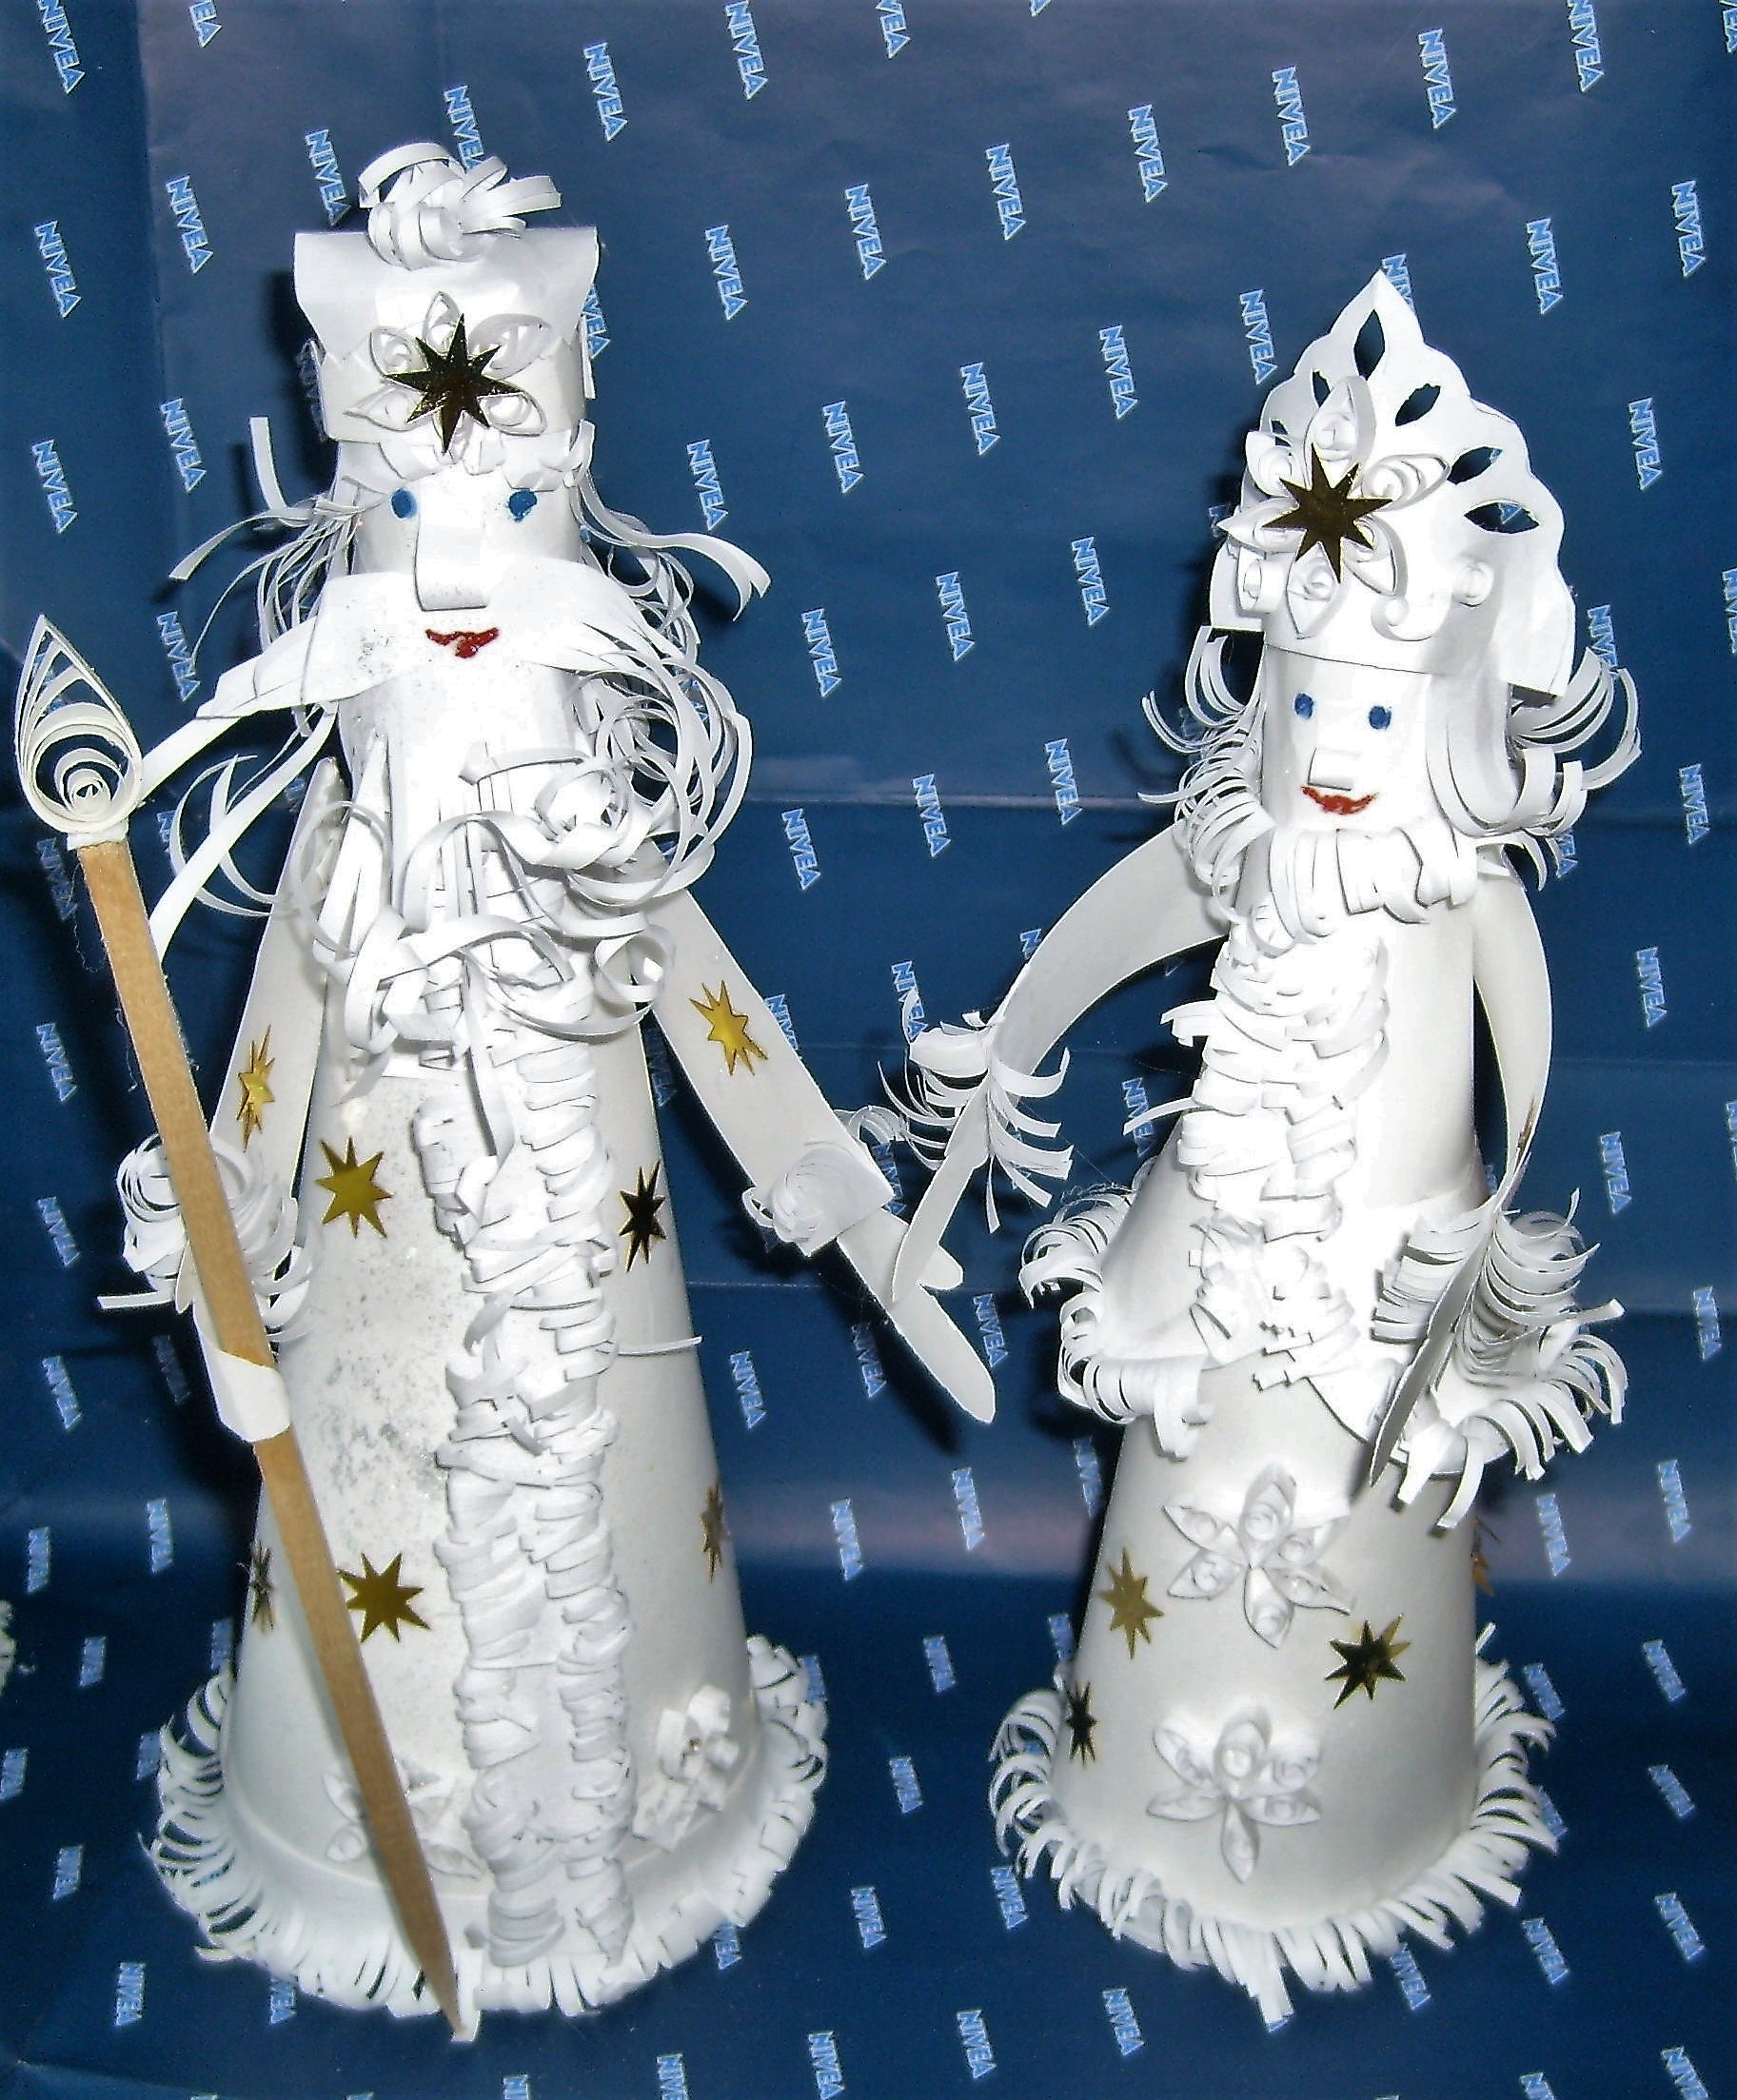 Поделка снегурочка своими руками - мастер-классы из конуса, оригами, объемные модели